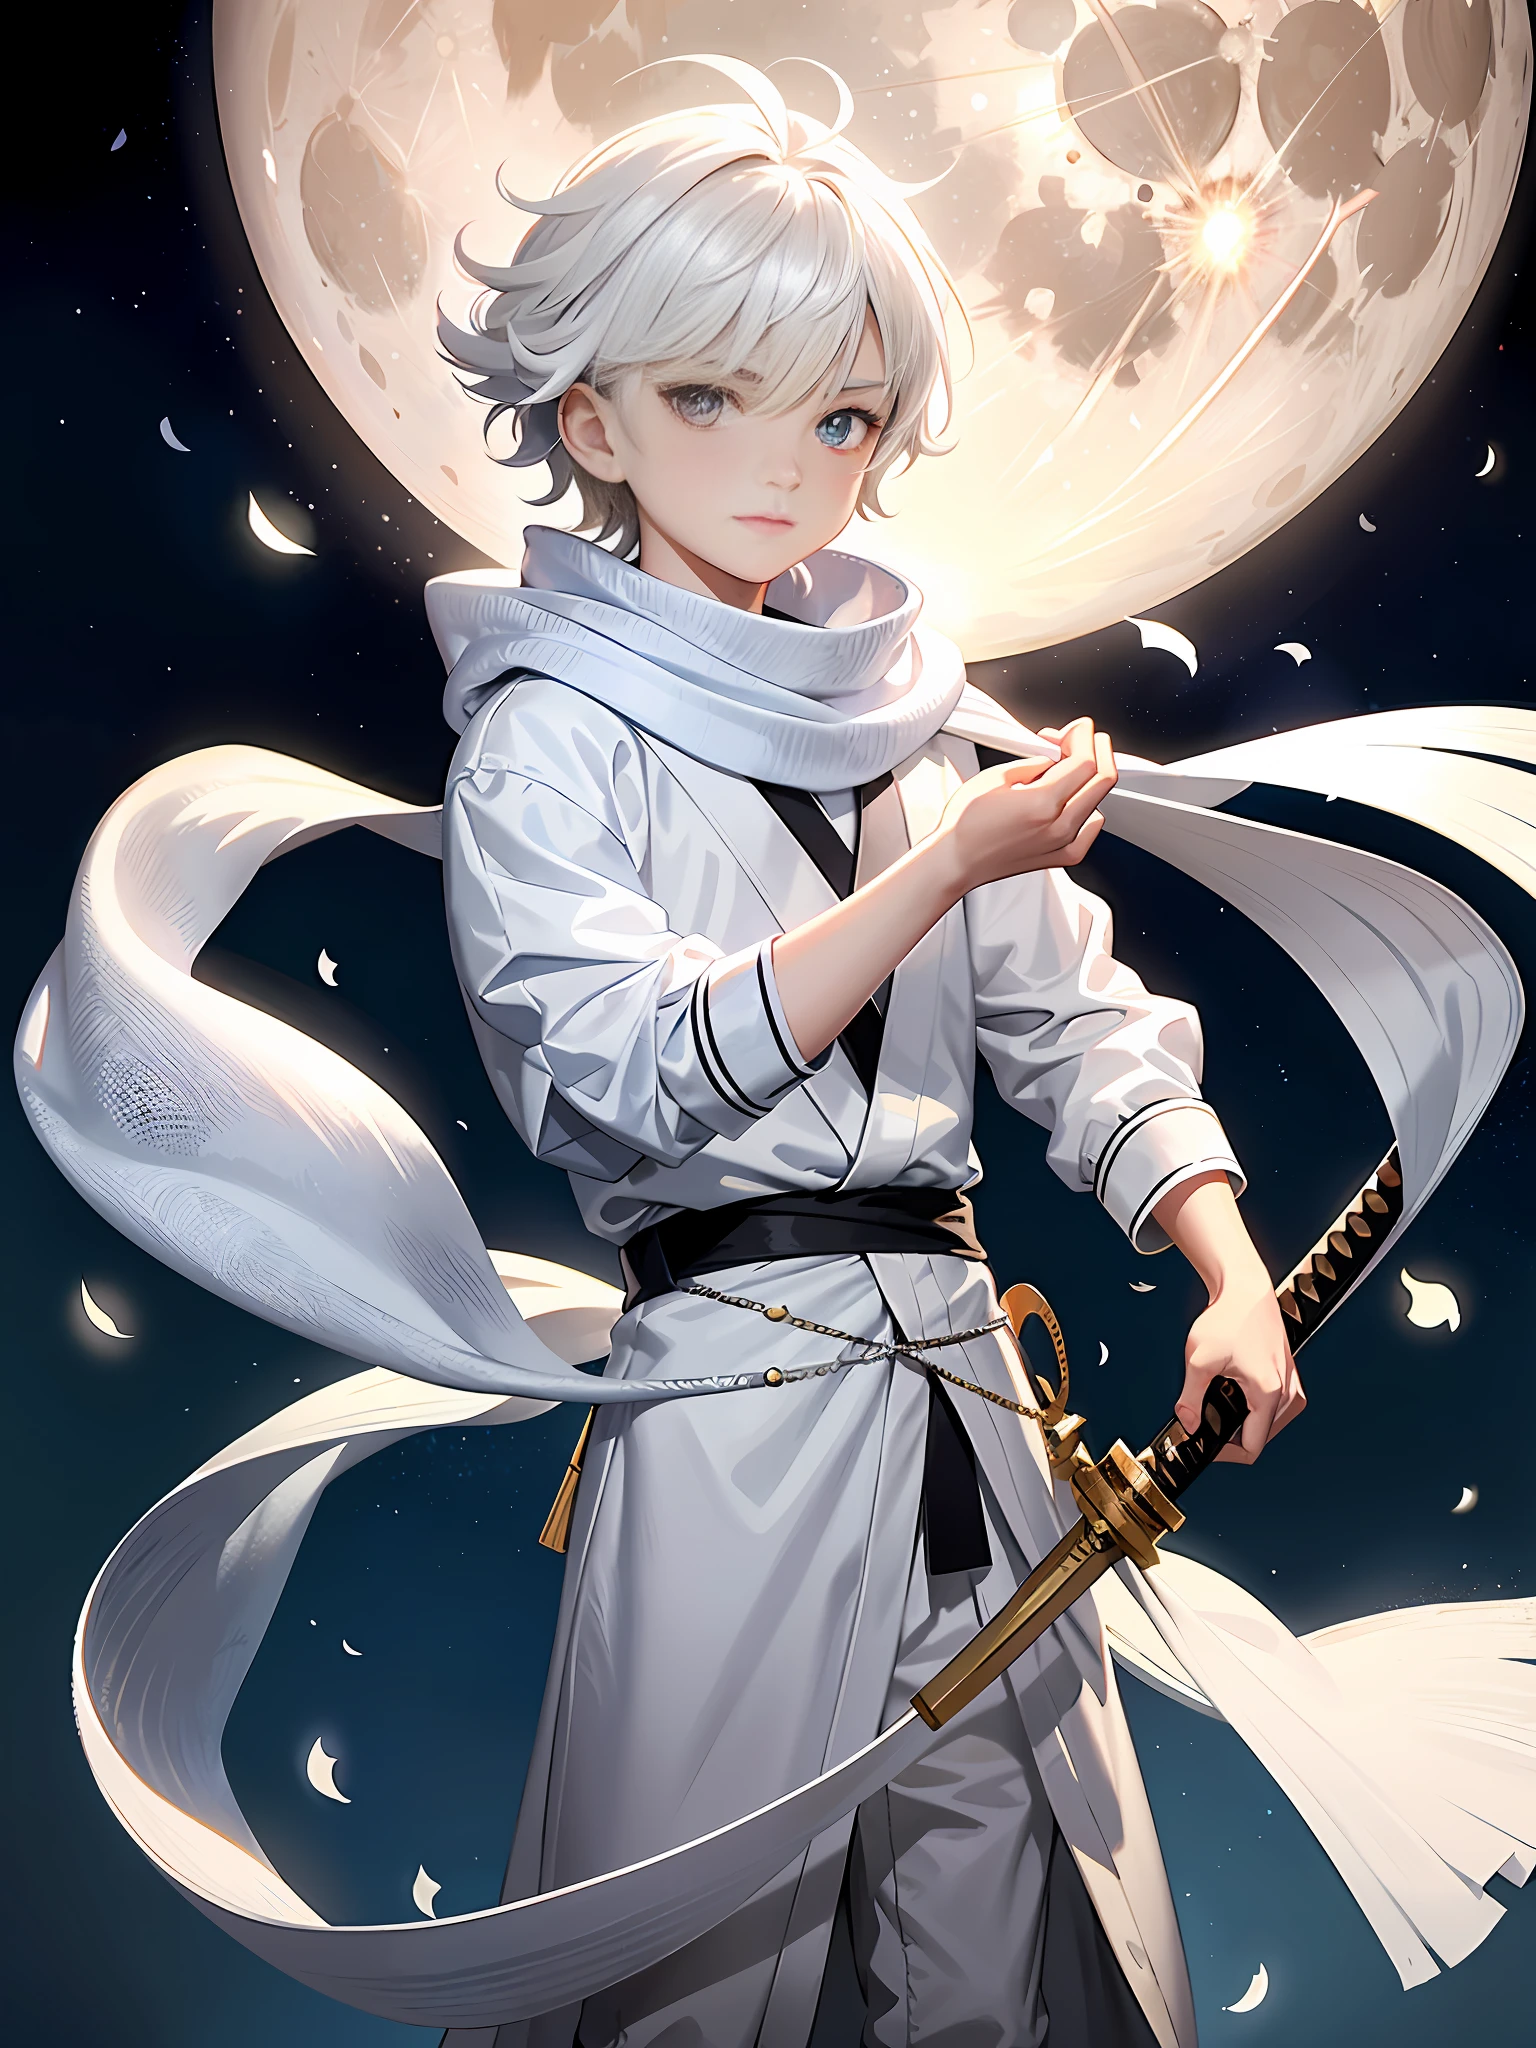 白い髪と銀色の目をした8歳の男の子, 氷の魔法を使った優れた戦闘スキルで知られています. 彼は満月の光のような白い服を着ており、首に長いスカーフを巻いています, さらに、彼は腰の右側に持っている月の女神の祝福を受けた刀も持っています